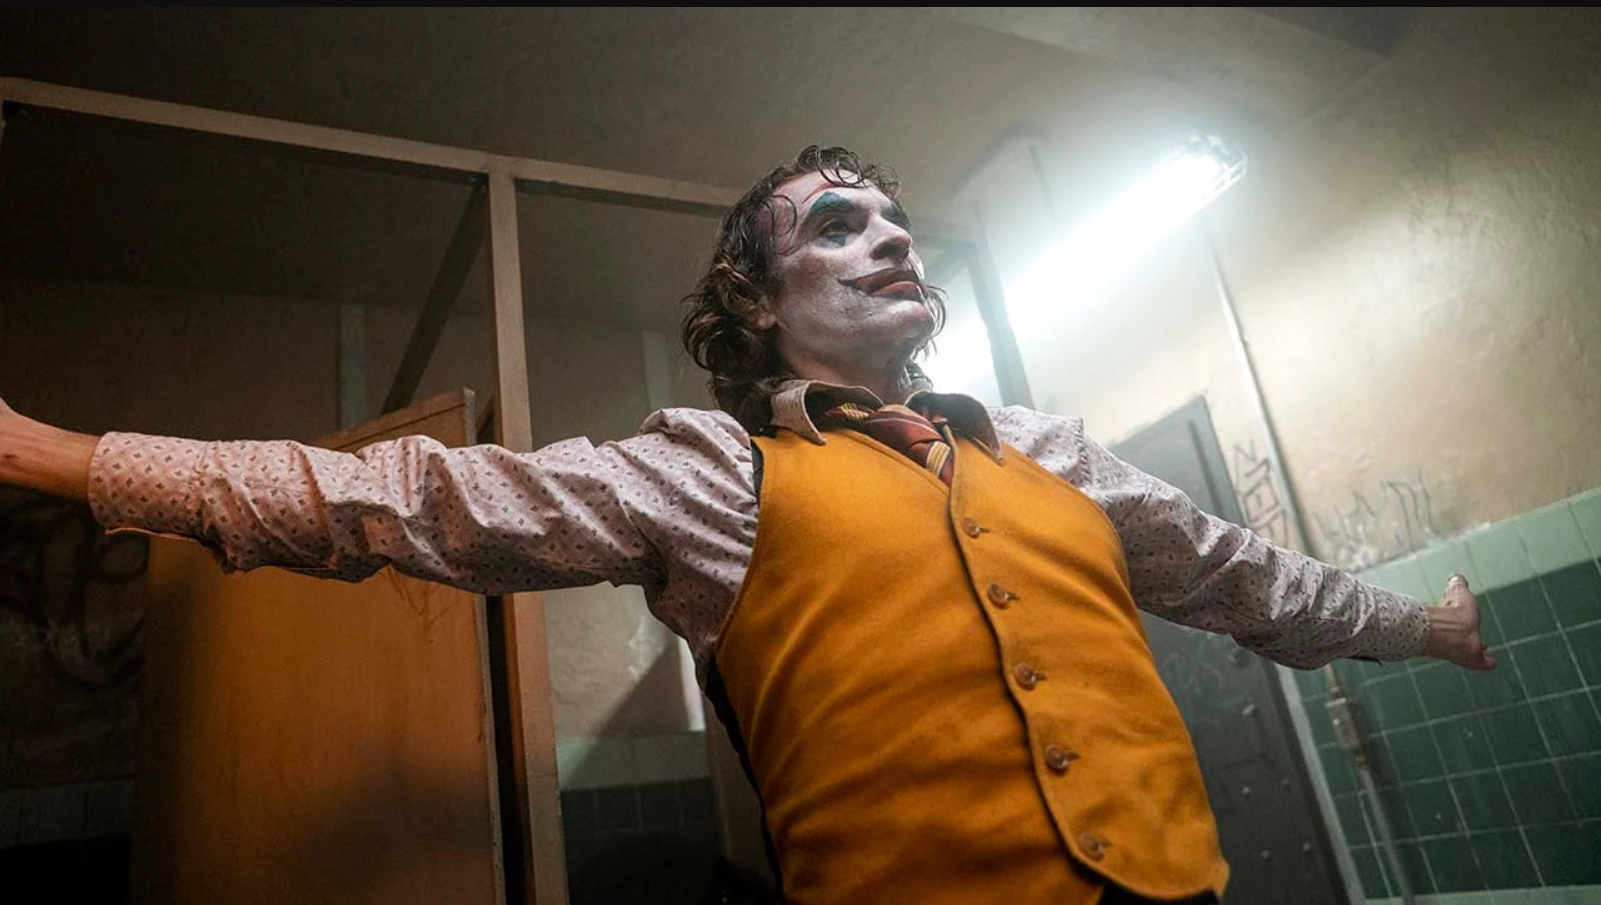 sa snimanja nastavka Jokera Joaquin Phoenix u narandžastom prsluku roze košulji raširenih ruku na licu jaka šminka kao joker sa bijelim puderom crnim ustima u prostoriji kroz prozor probija dnevna svjetlost iza drvena vrata